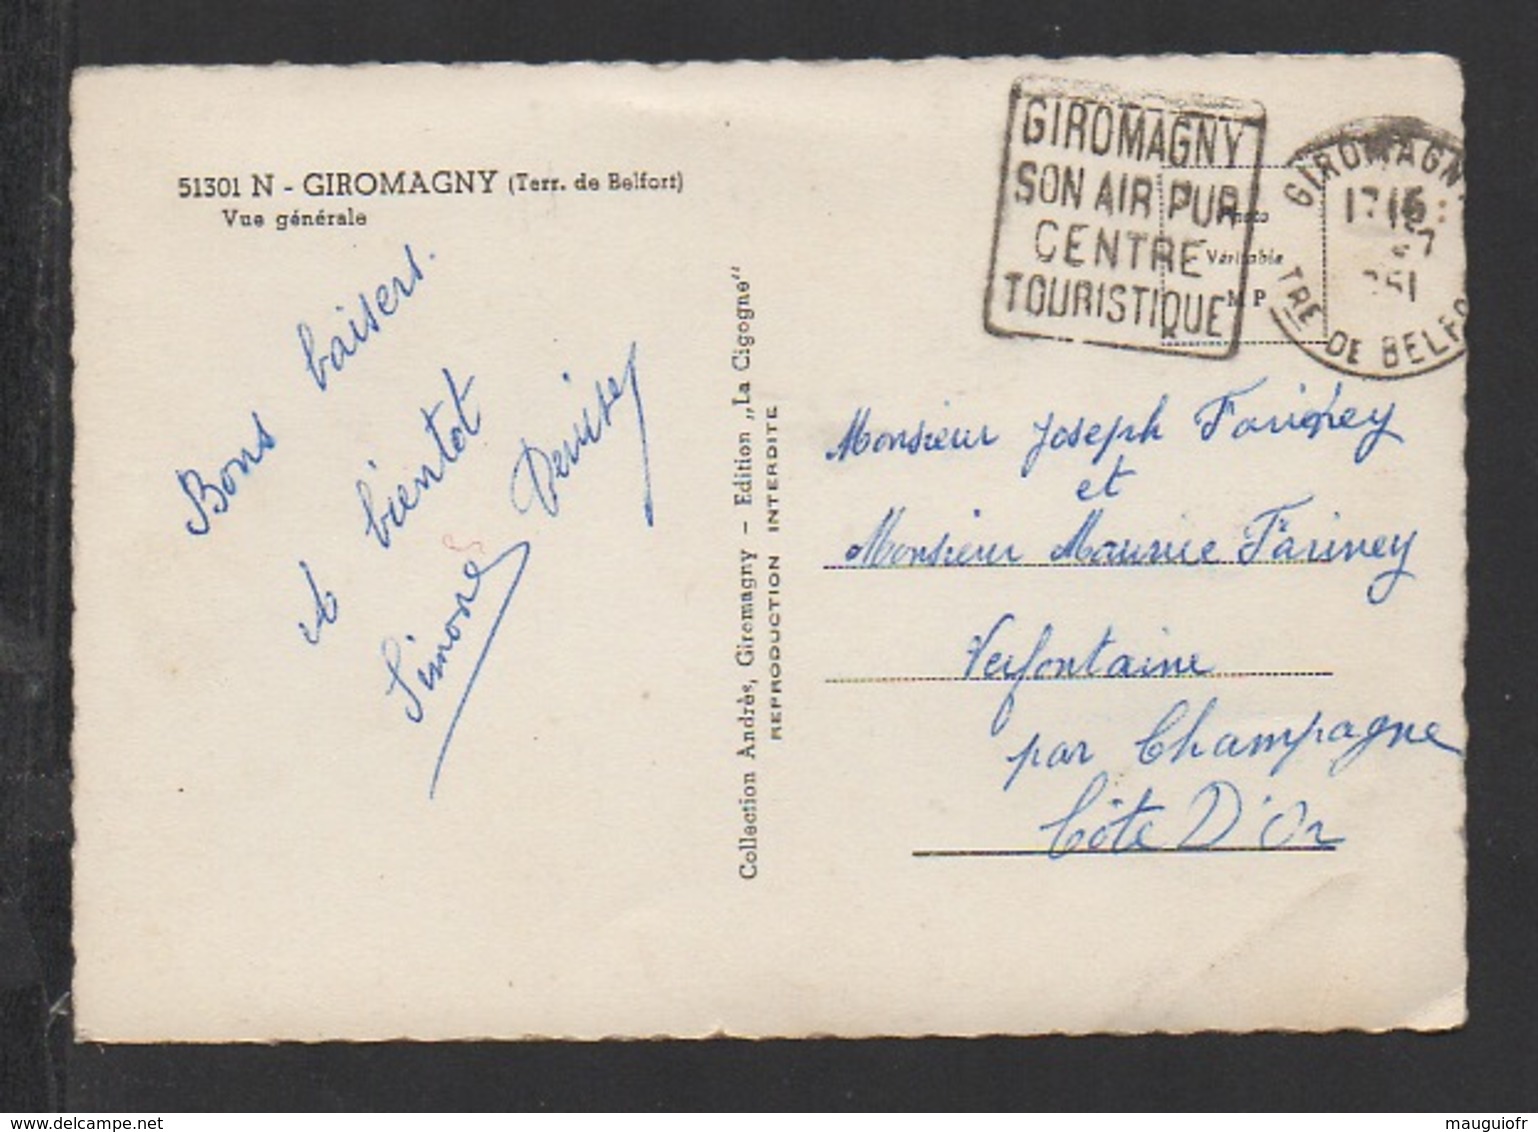 DF / 90 TERRITOIRE DE BELFORT / GIROMAGNY / VUE GENERALE / CIRCULÉE EN 1951 - Giromagny